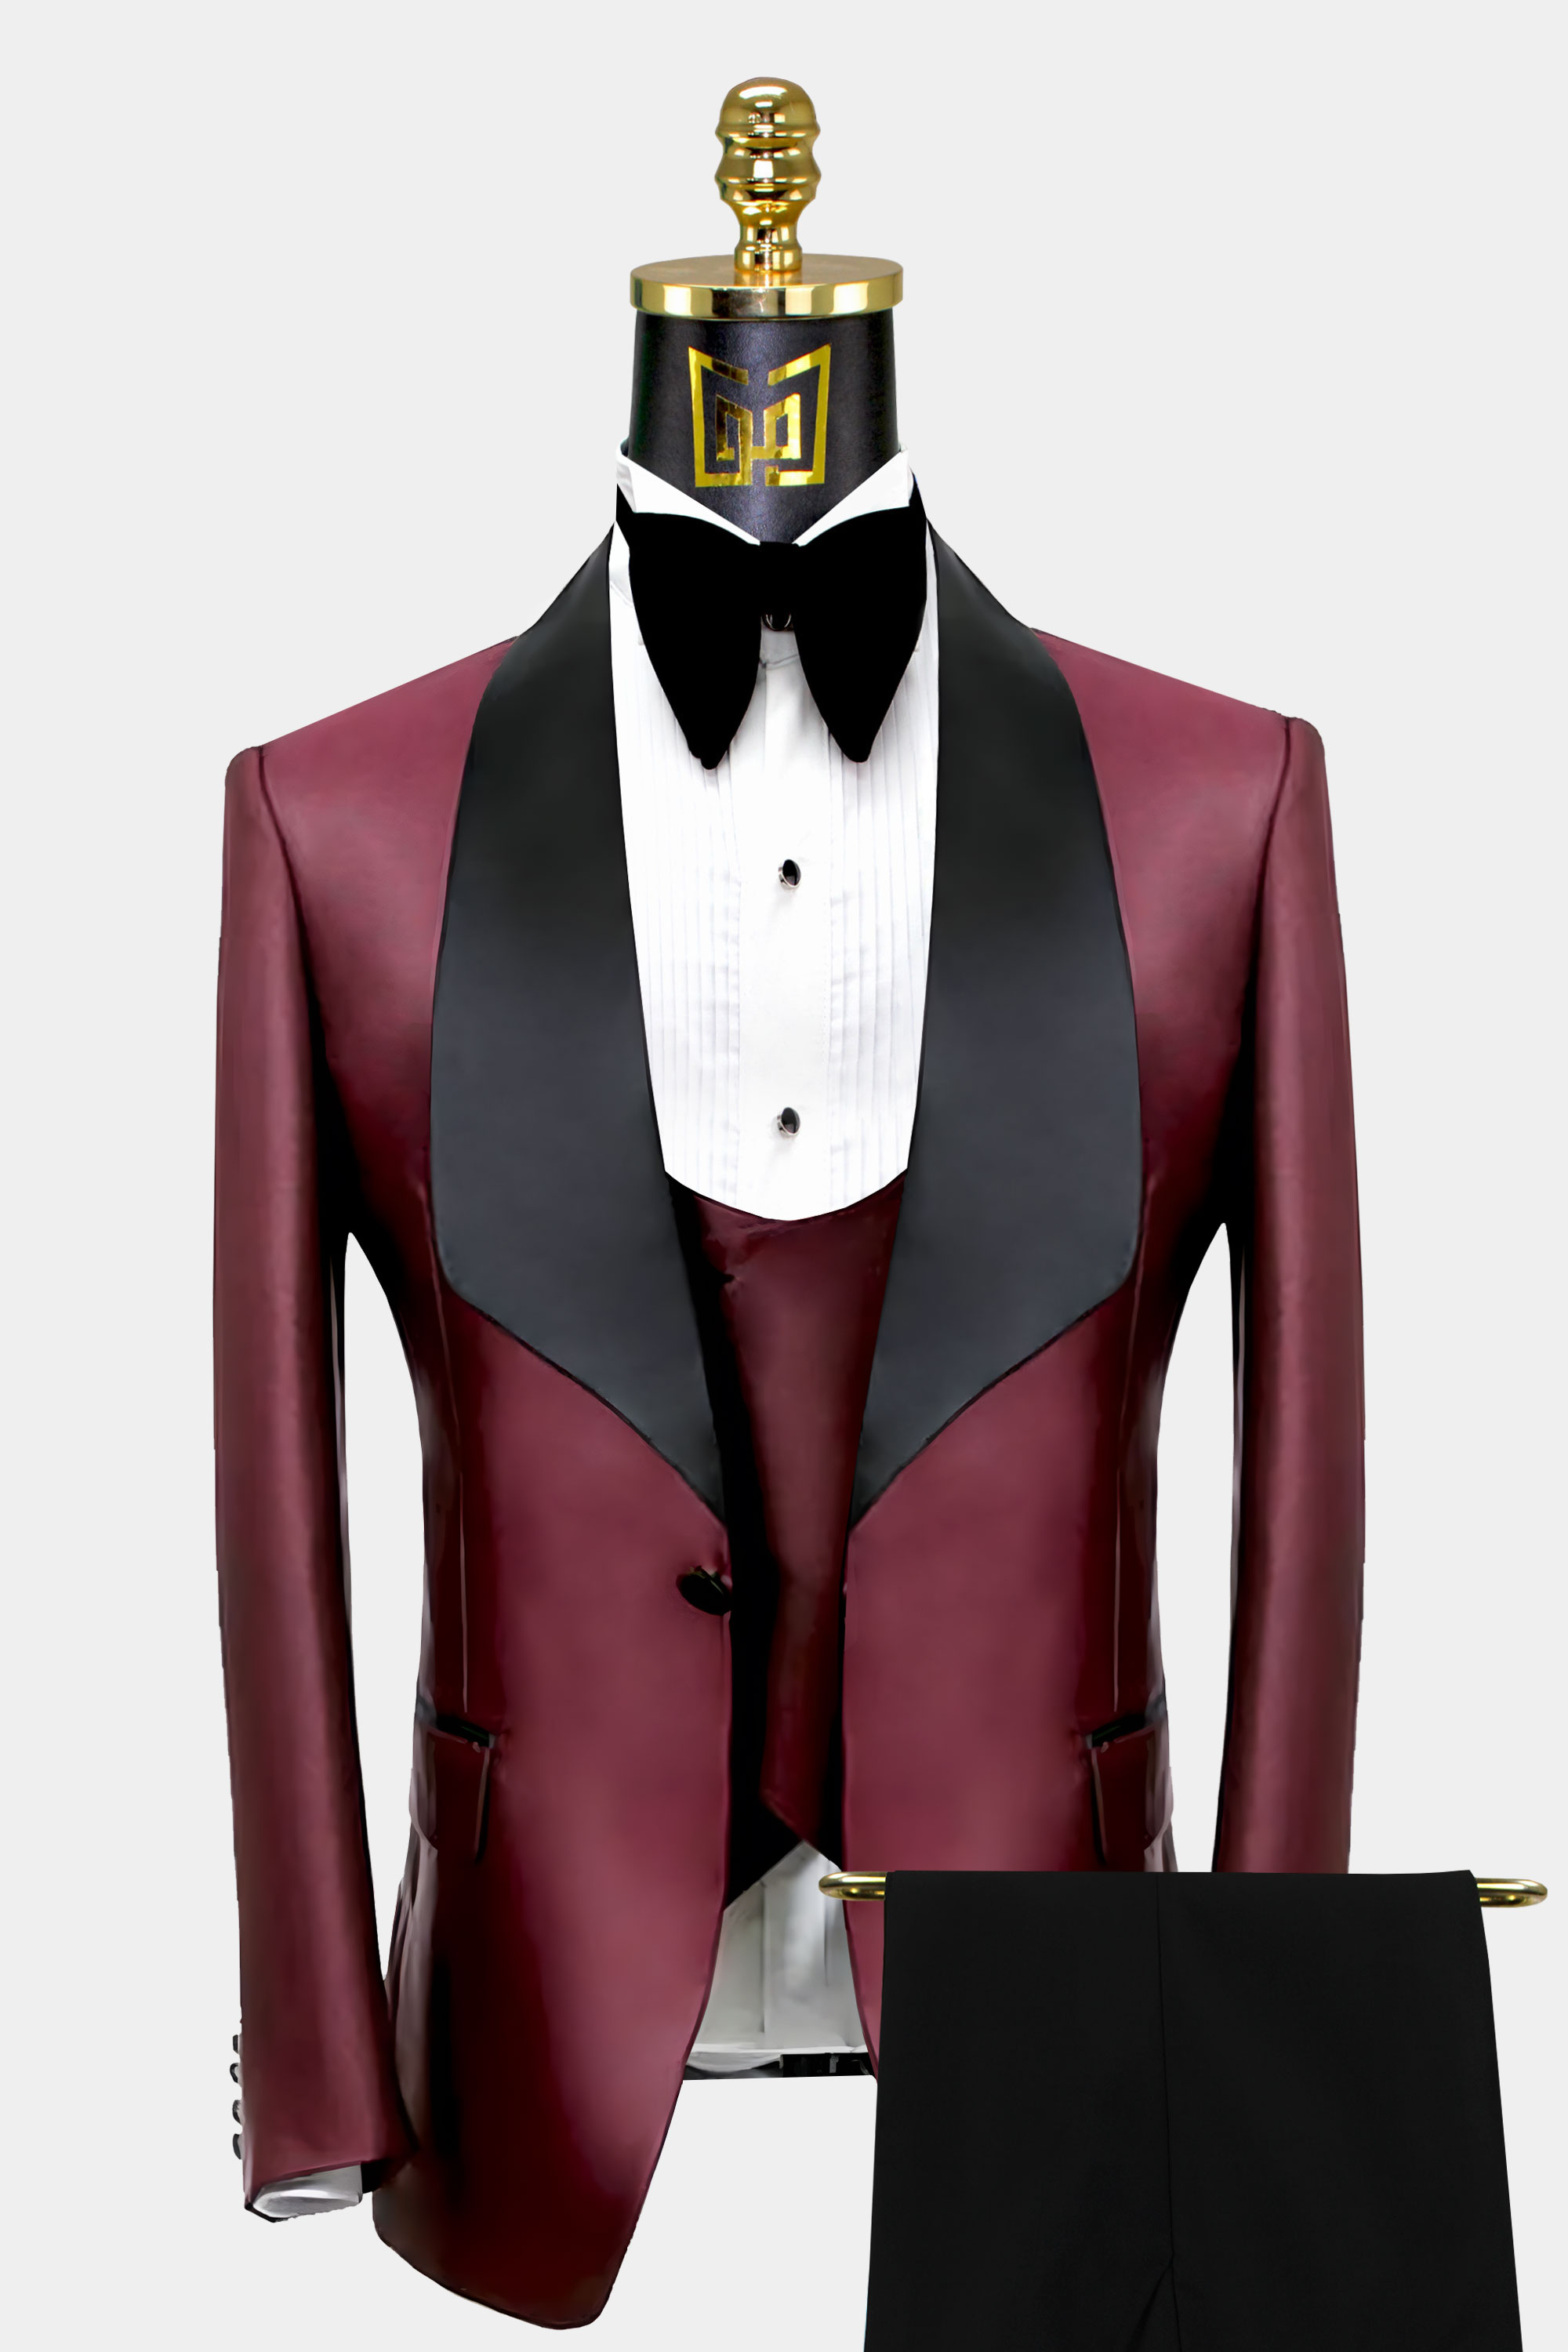 Black-and-Burgundy-Tuxedo-Suit-Wedding-Groom-Prom-Suit-from-Gentlemansguru.com